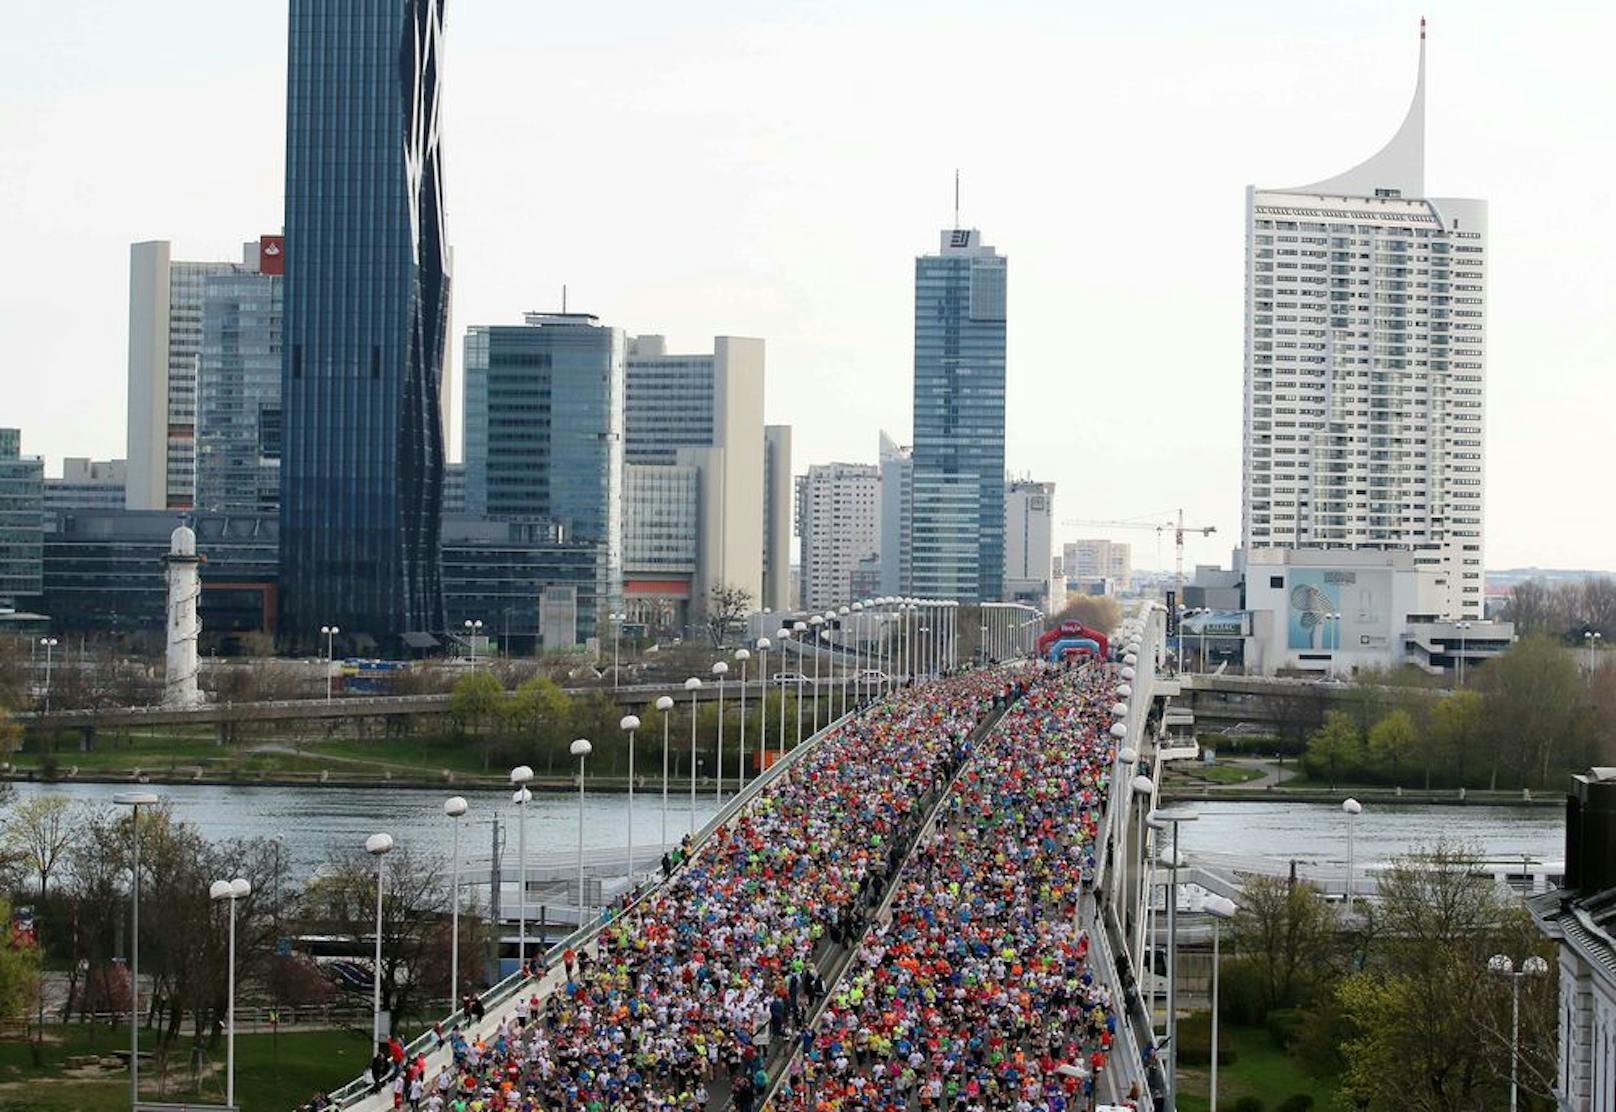 Am 24. April tummeln sich wieder zahlreiche Läufer auf der Strecke des Wien-Marathons. Die Wiener Linien schränken währenddessen den Betrieb ein.